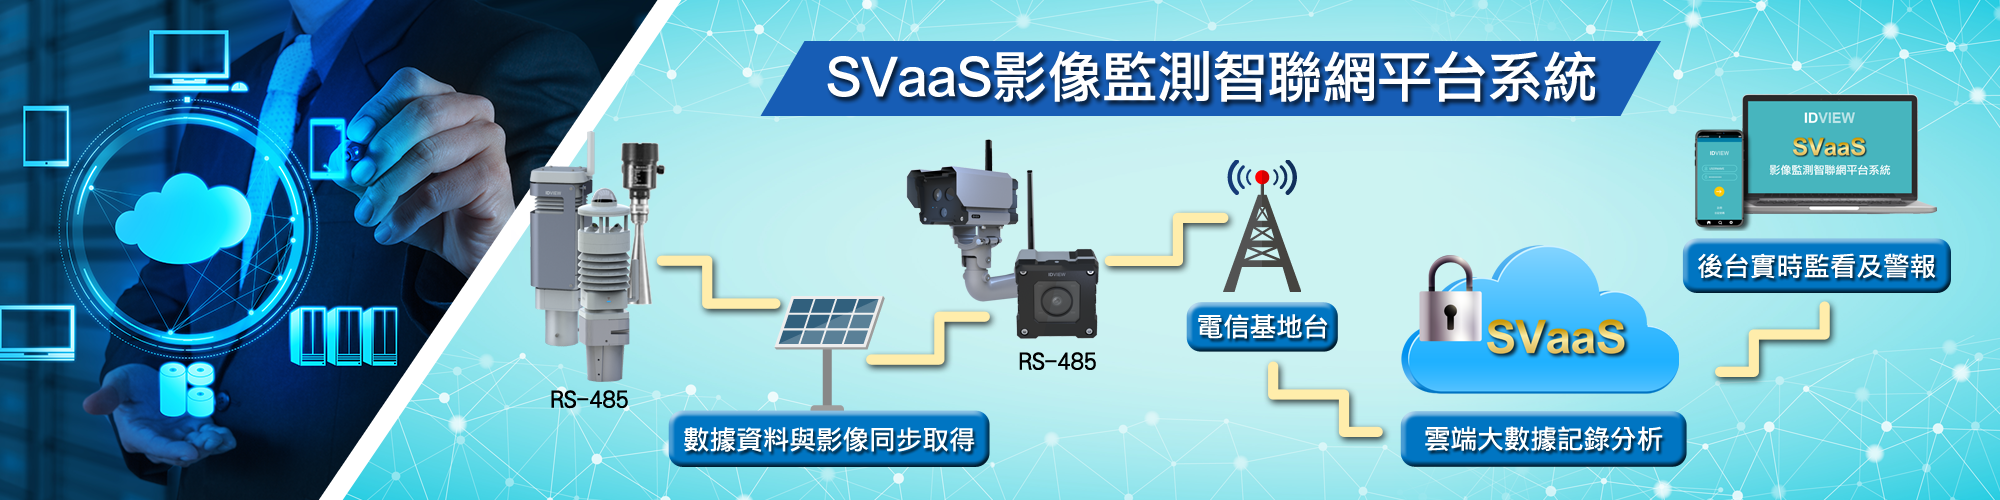 SVaaS影像監測智聯網平台系統